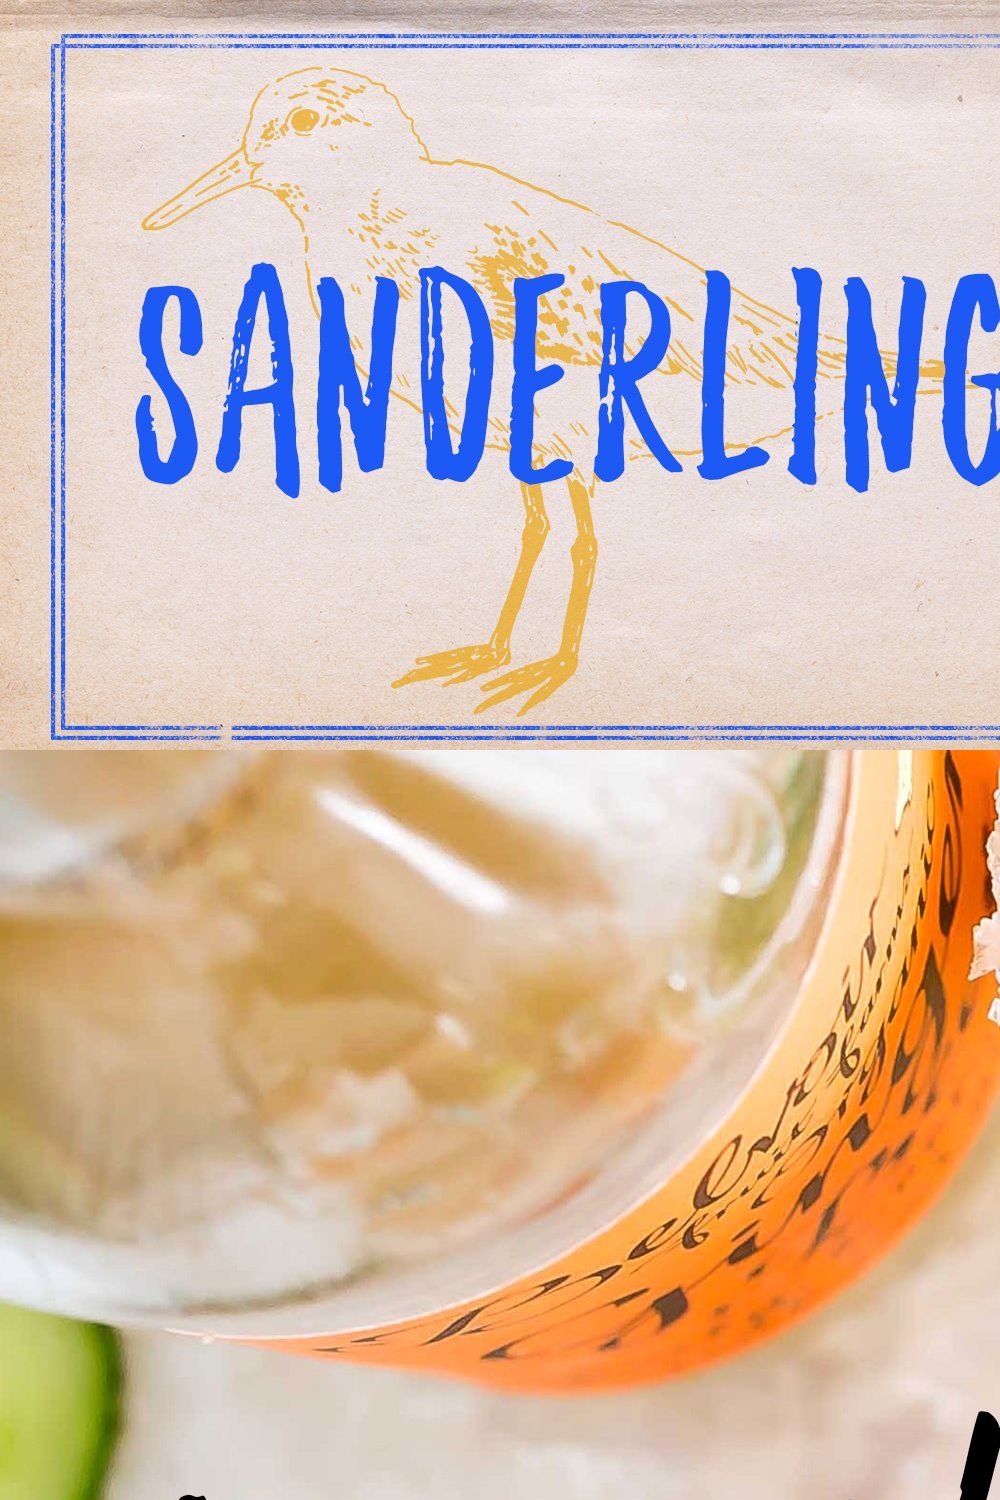 Sanderling Textured Font pinterest preview image.